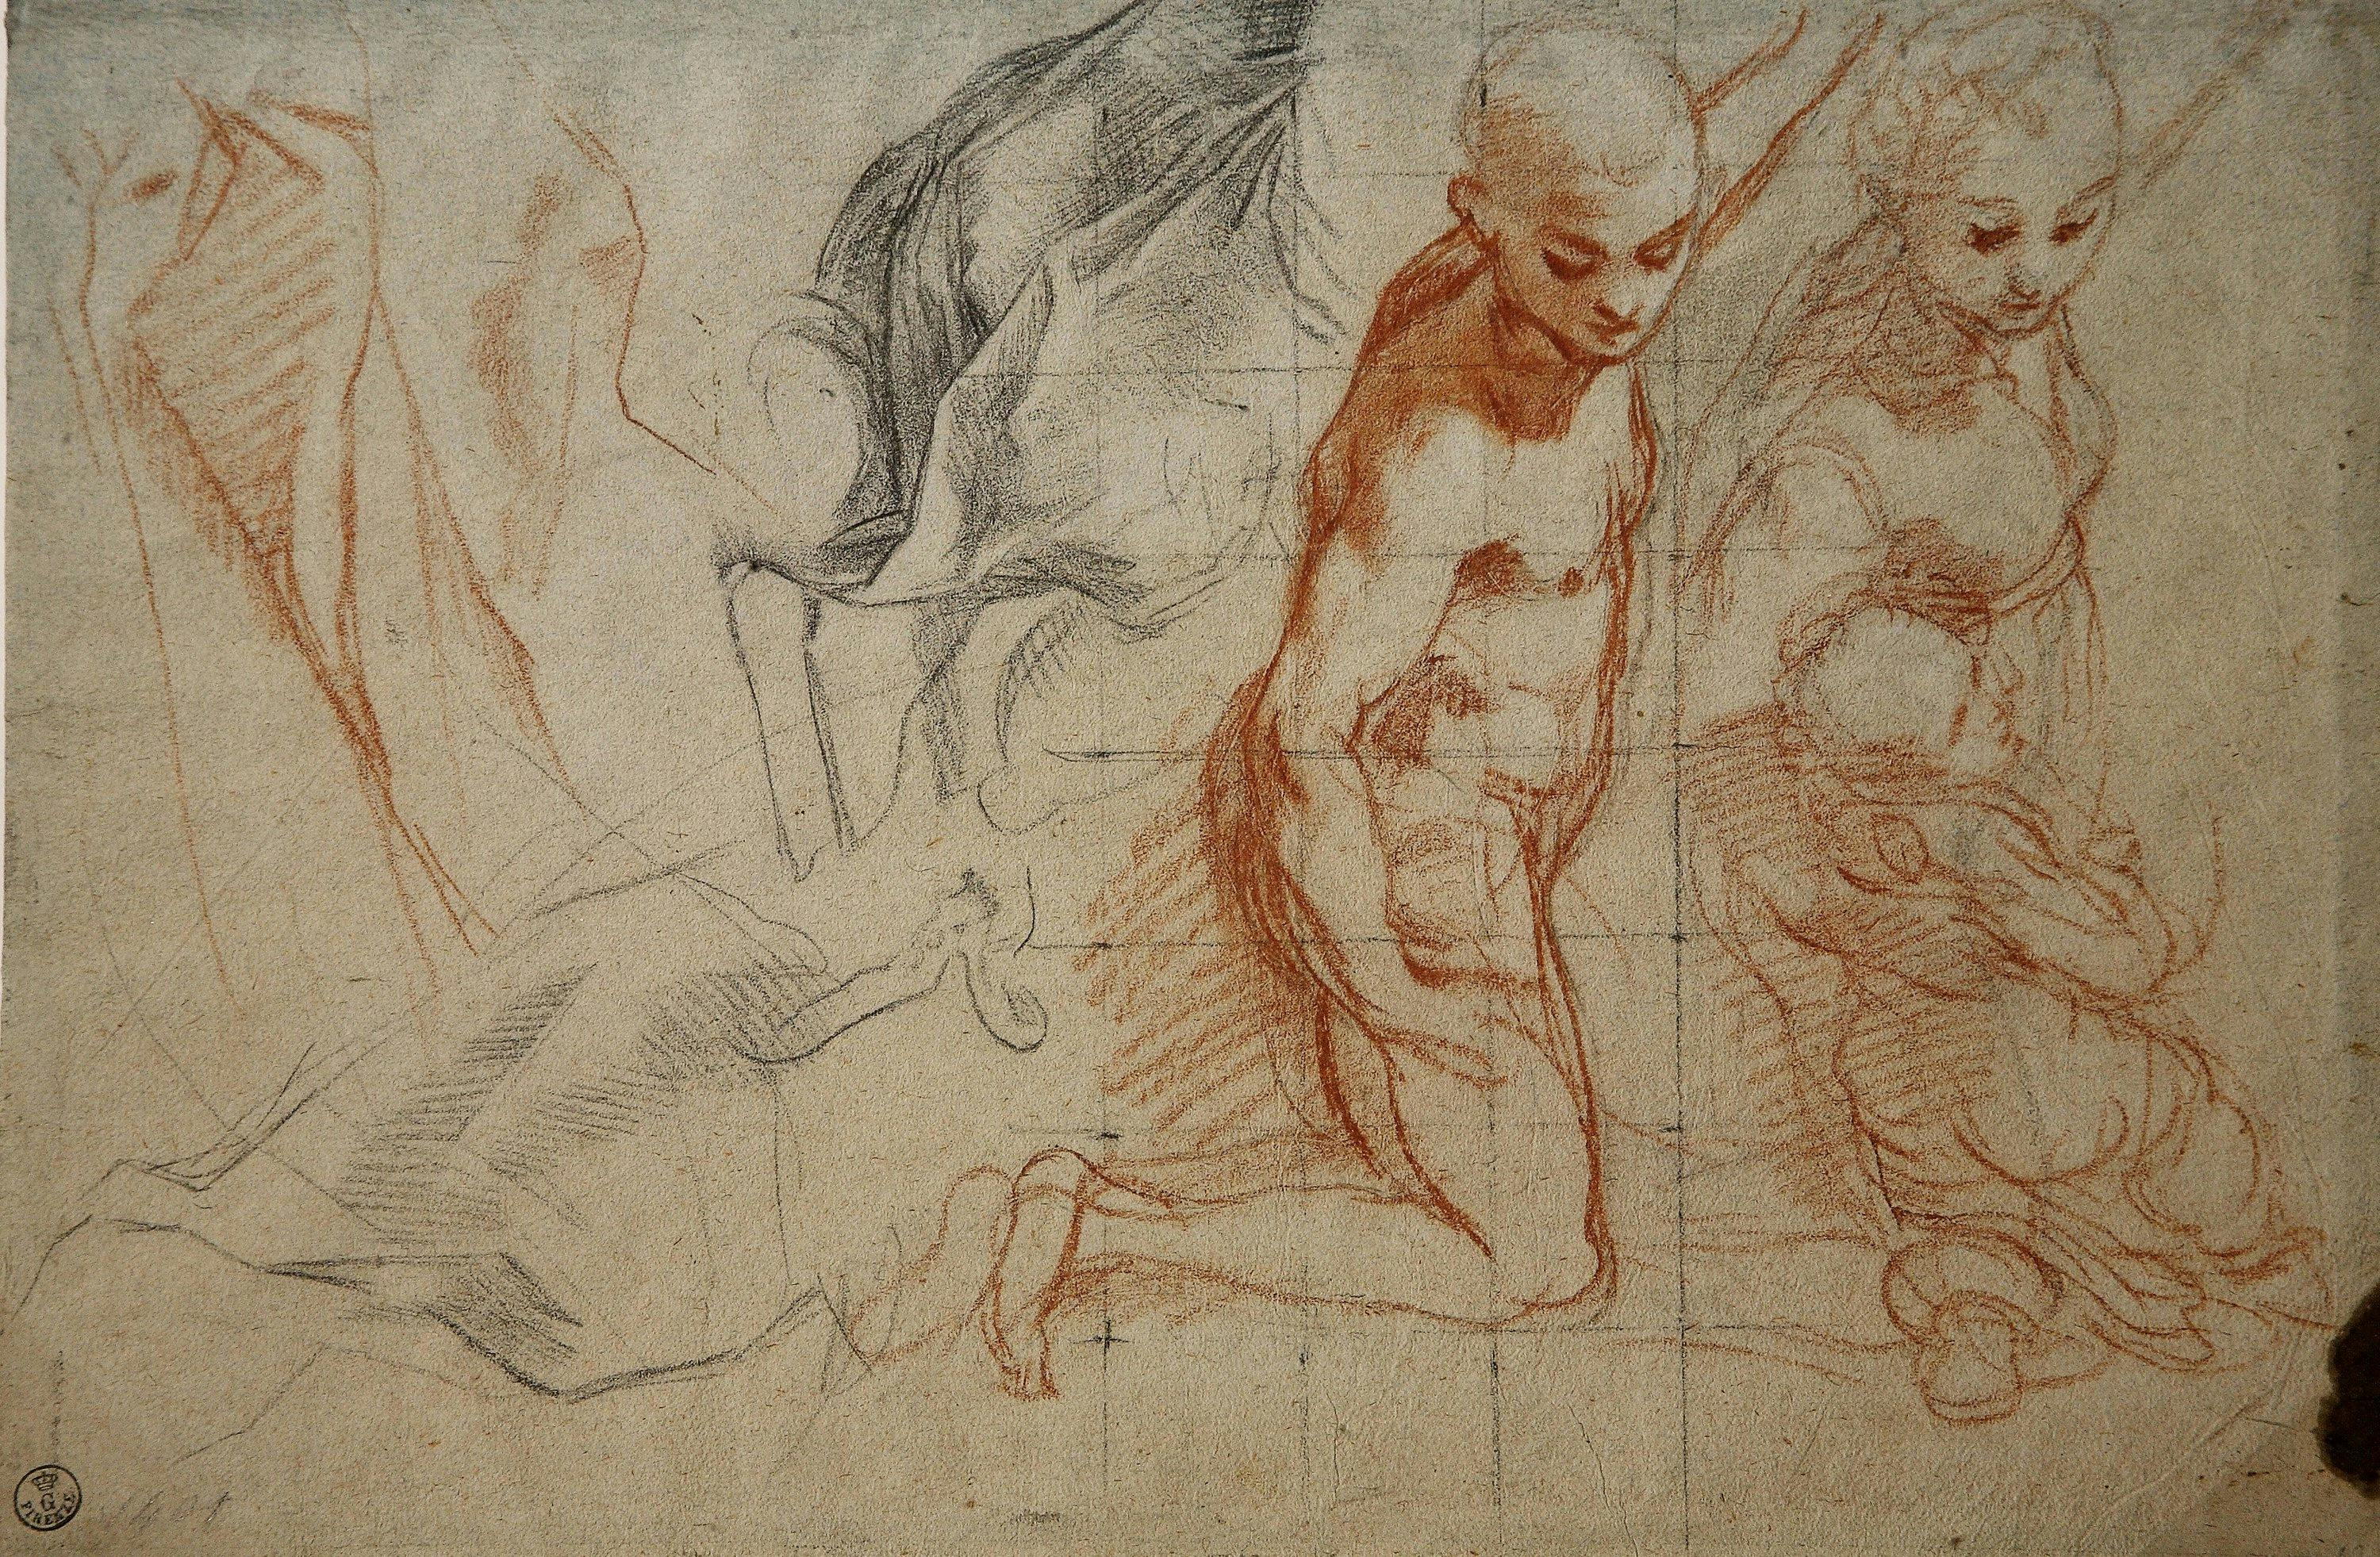 Federico Barocci disegnatore. La fucina delle immagini